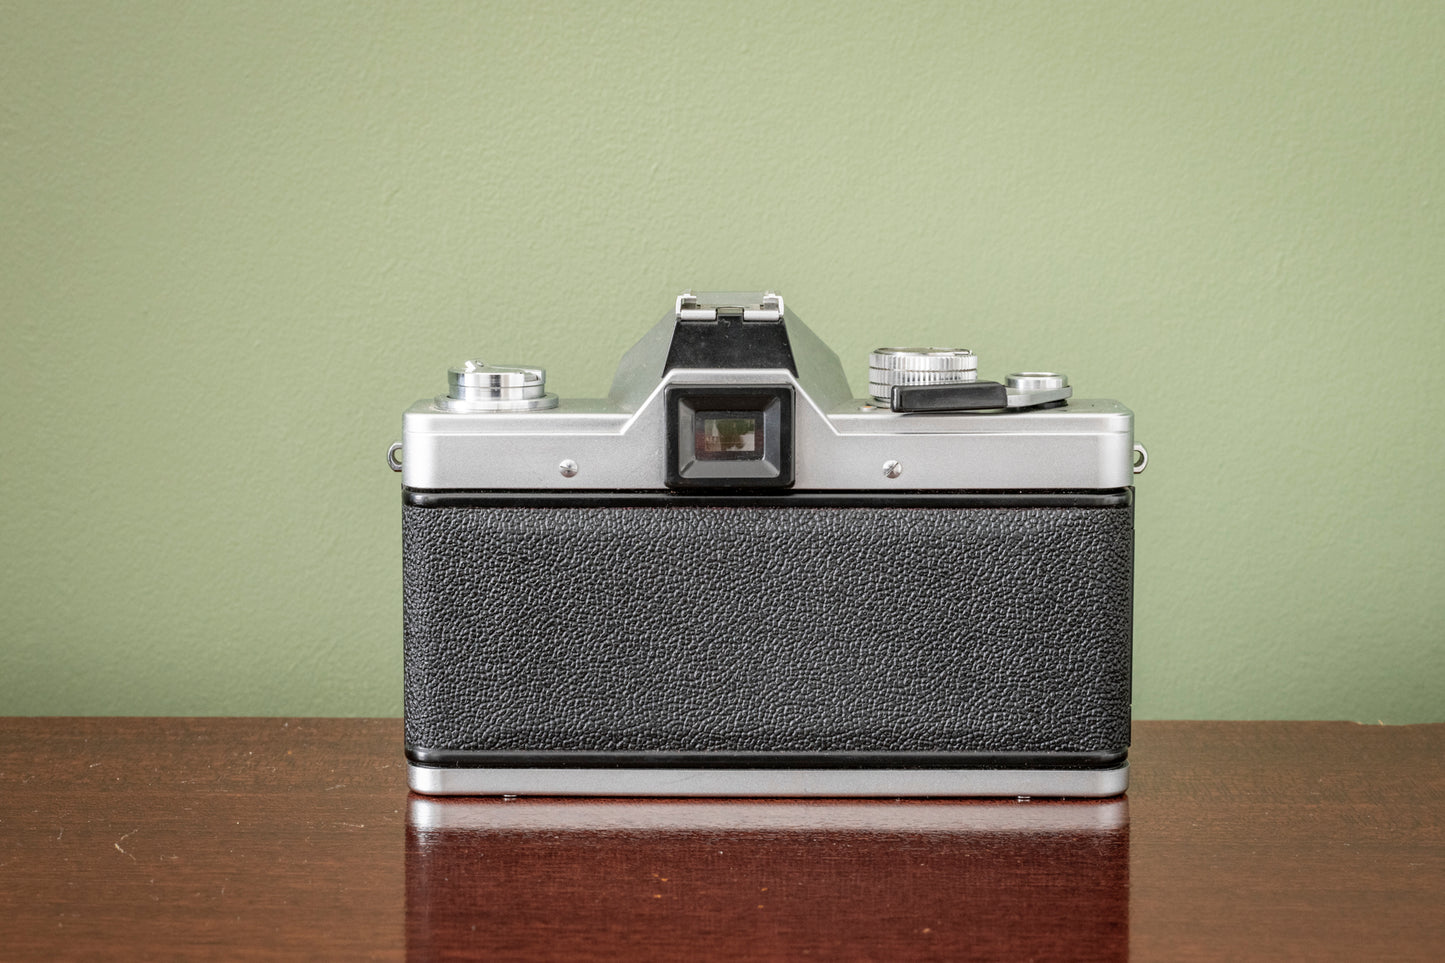 Immaculate 1970's Praktica LTL 3 35mm SLR Film Camera + Meyer-Optik Gorltz 50mm F2.8 Lens